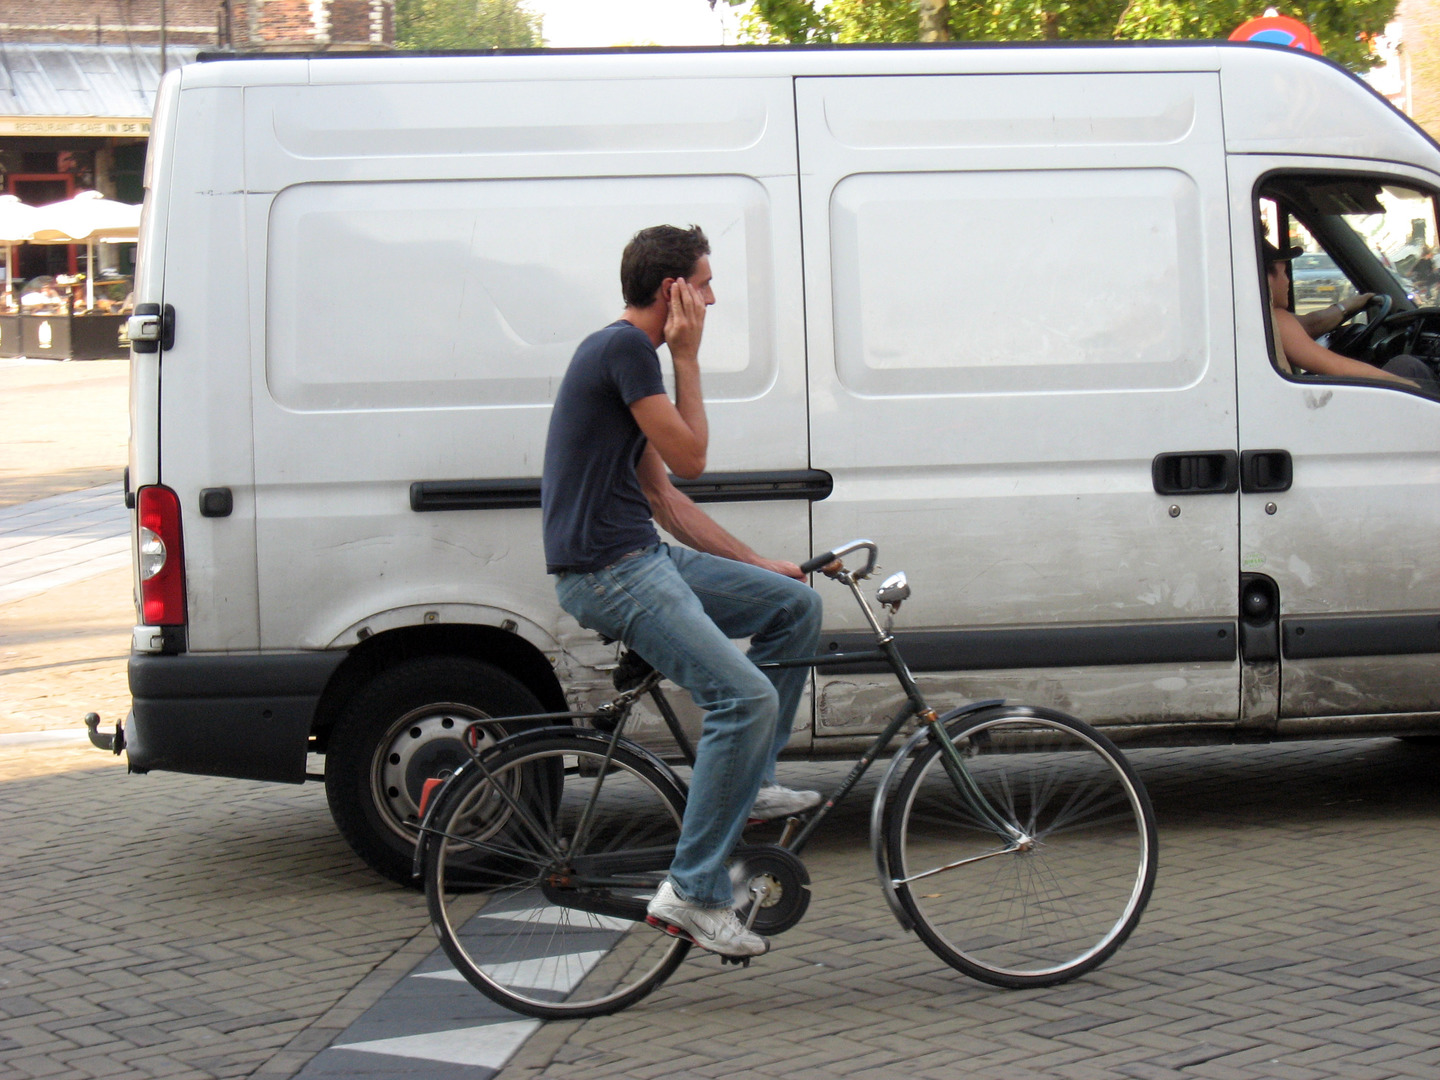 Велосипед: средство передвижения или источник повышенной опасности? рис-4